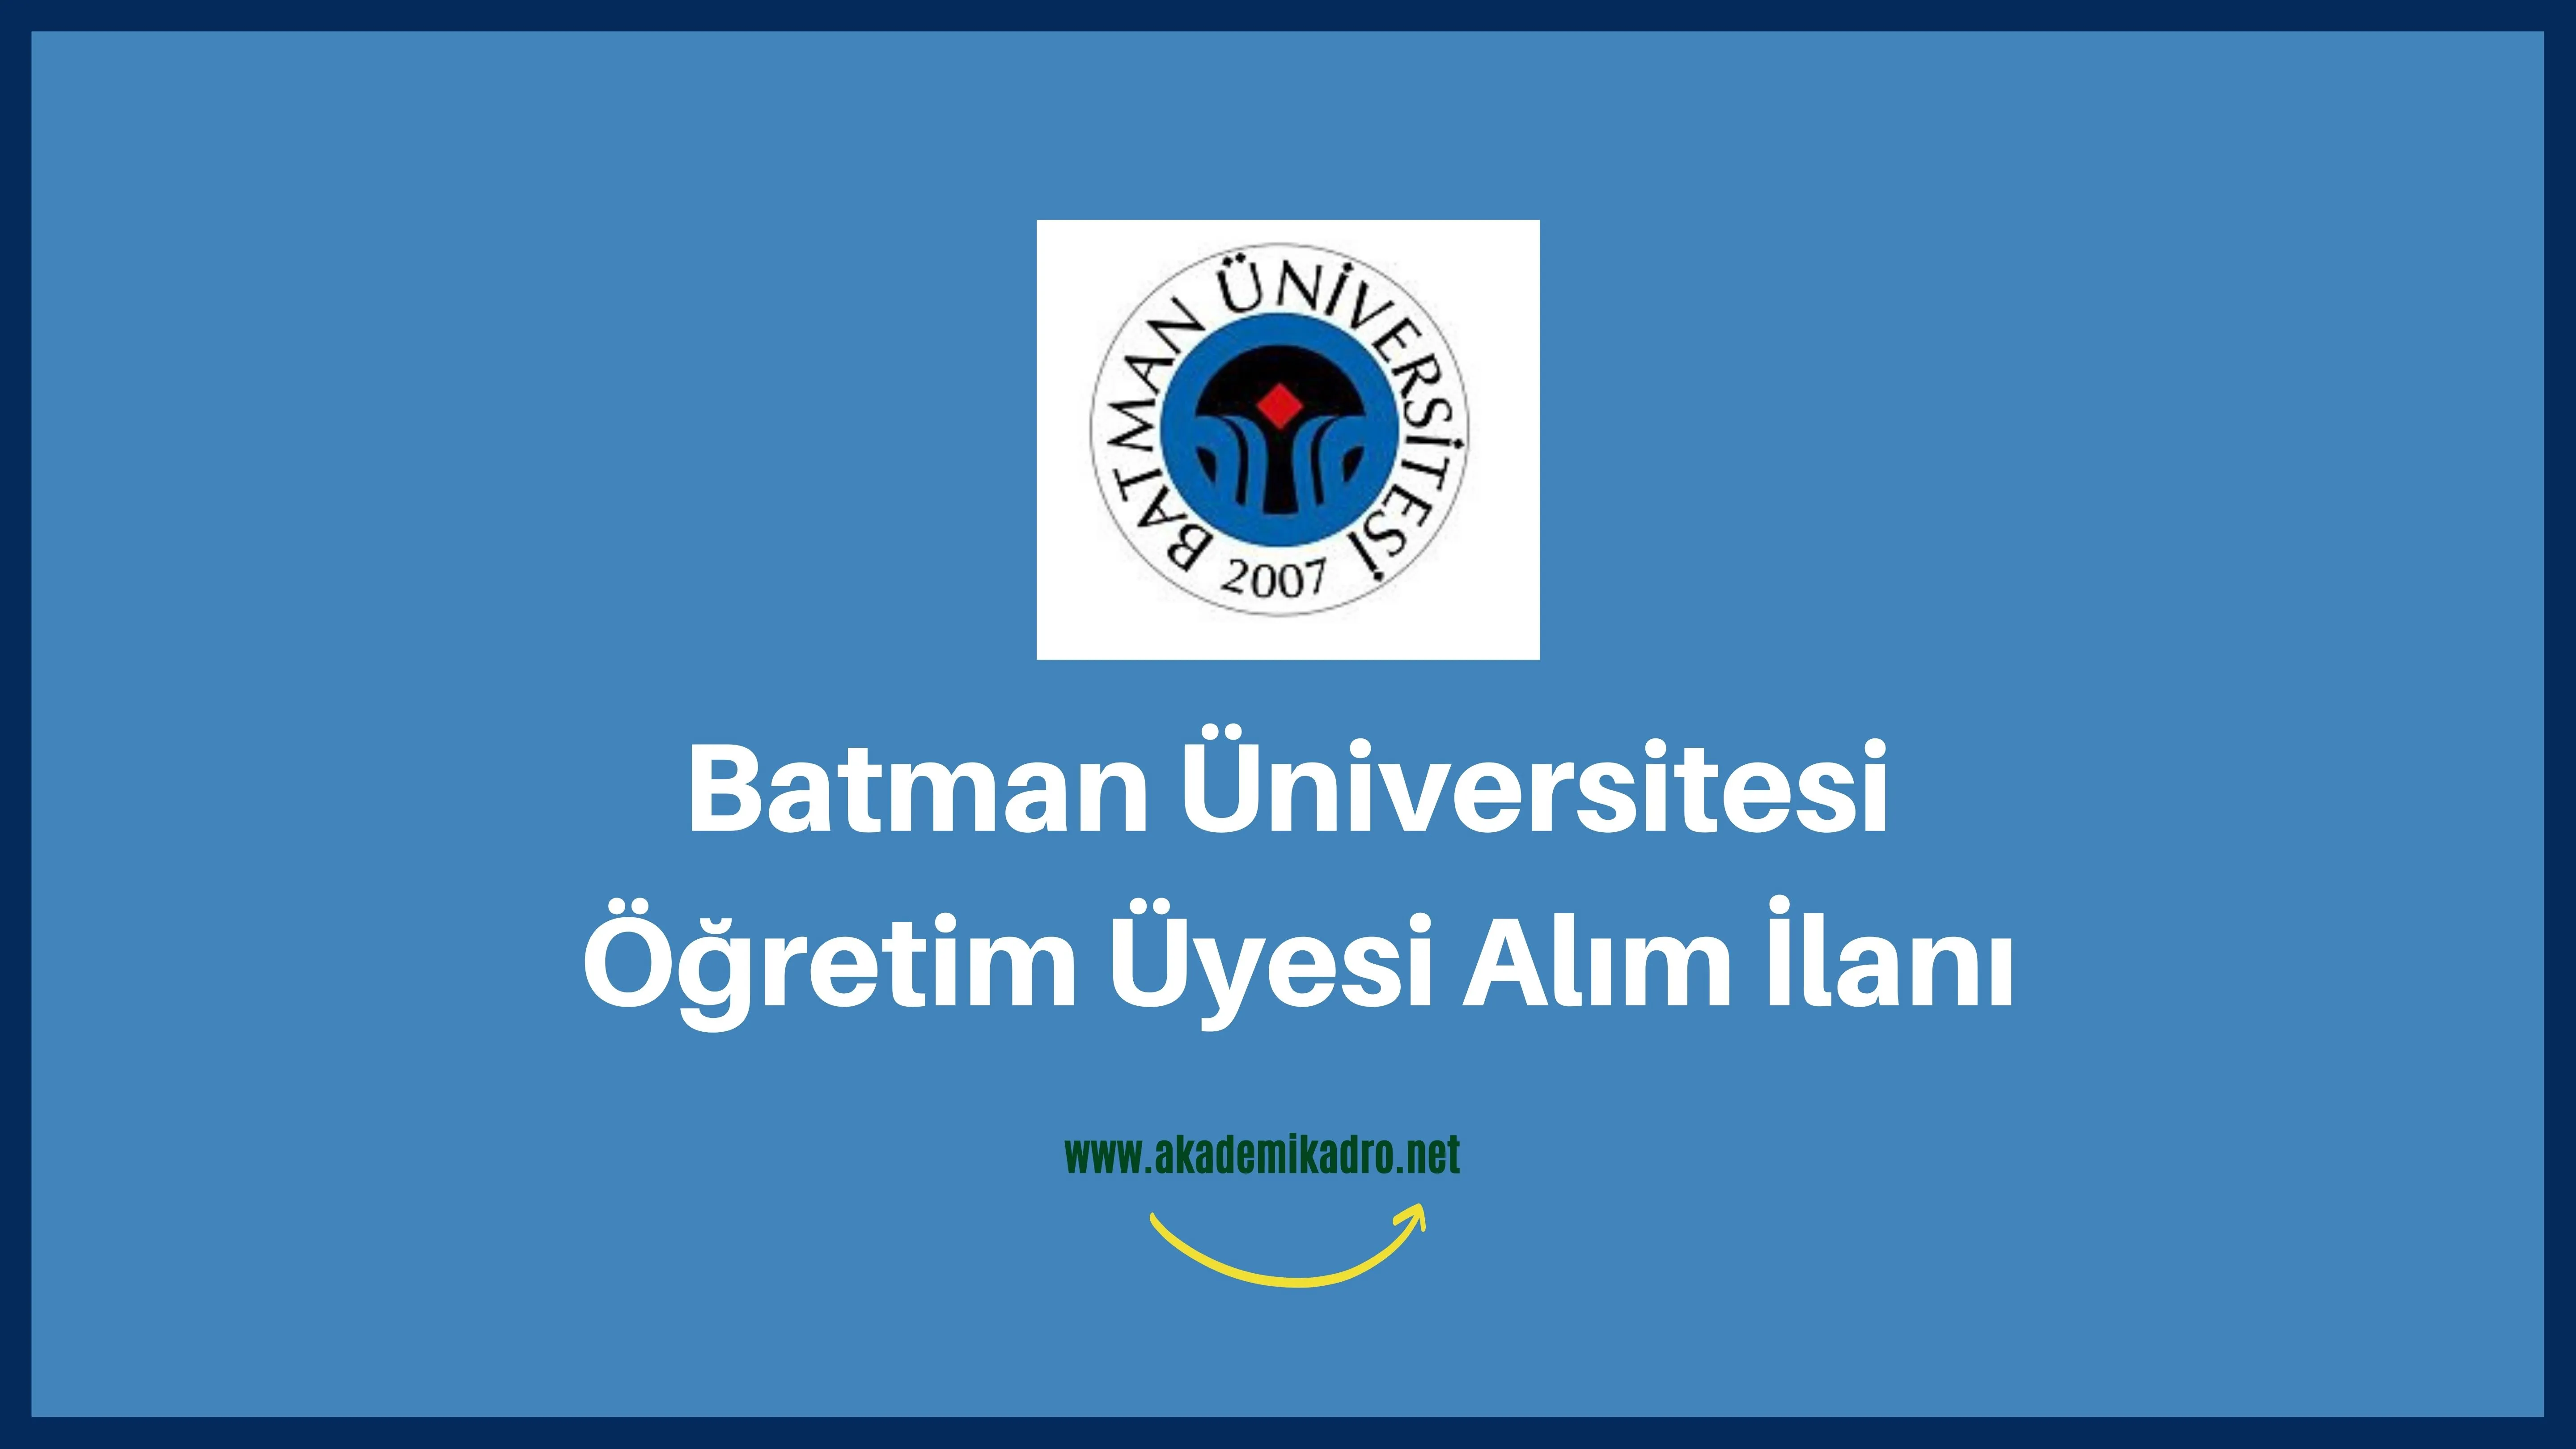 Batman Üniversitesi 11 akademik personel alacak